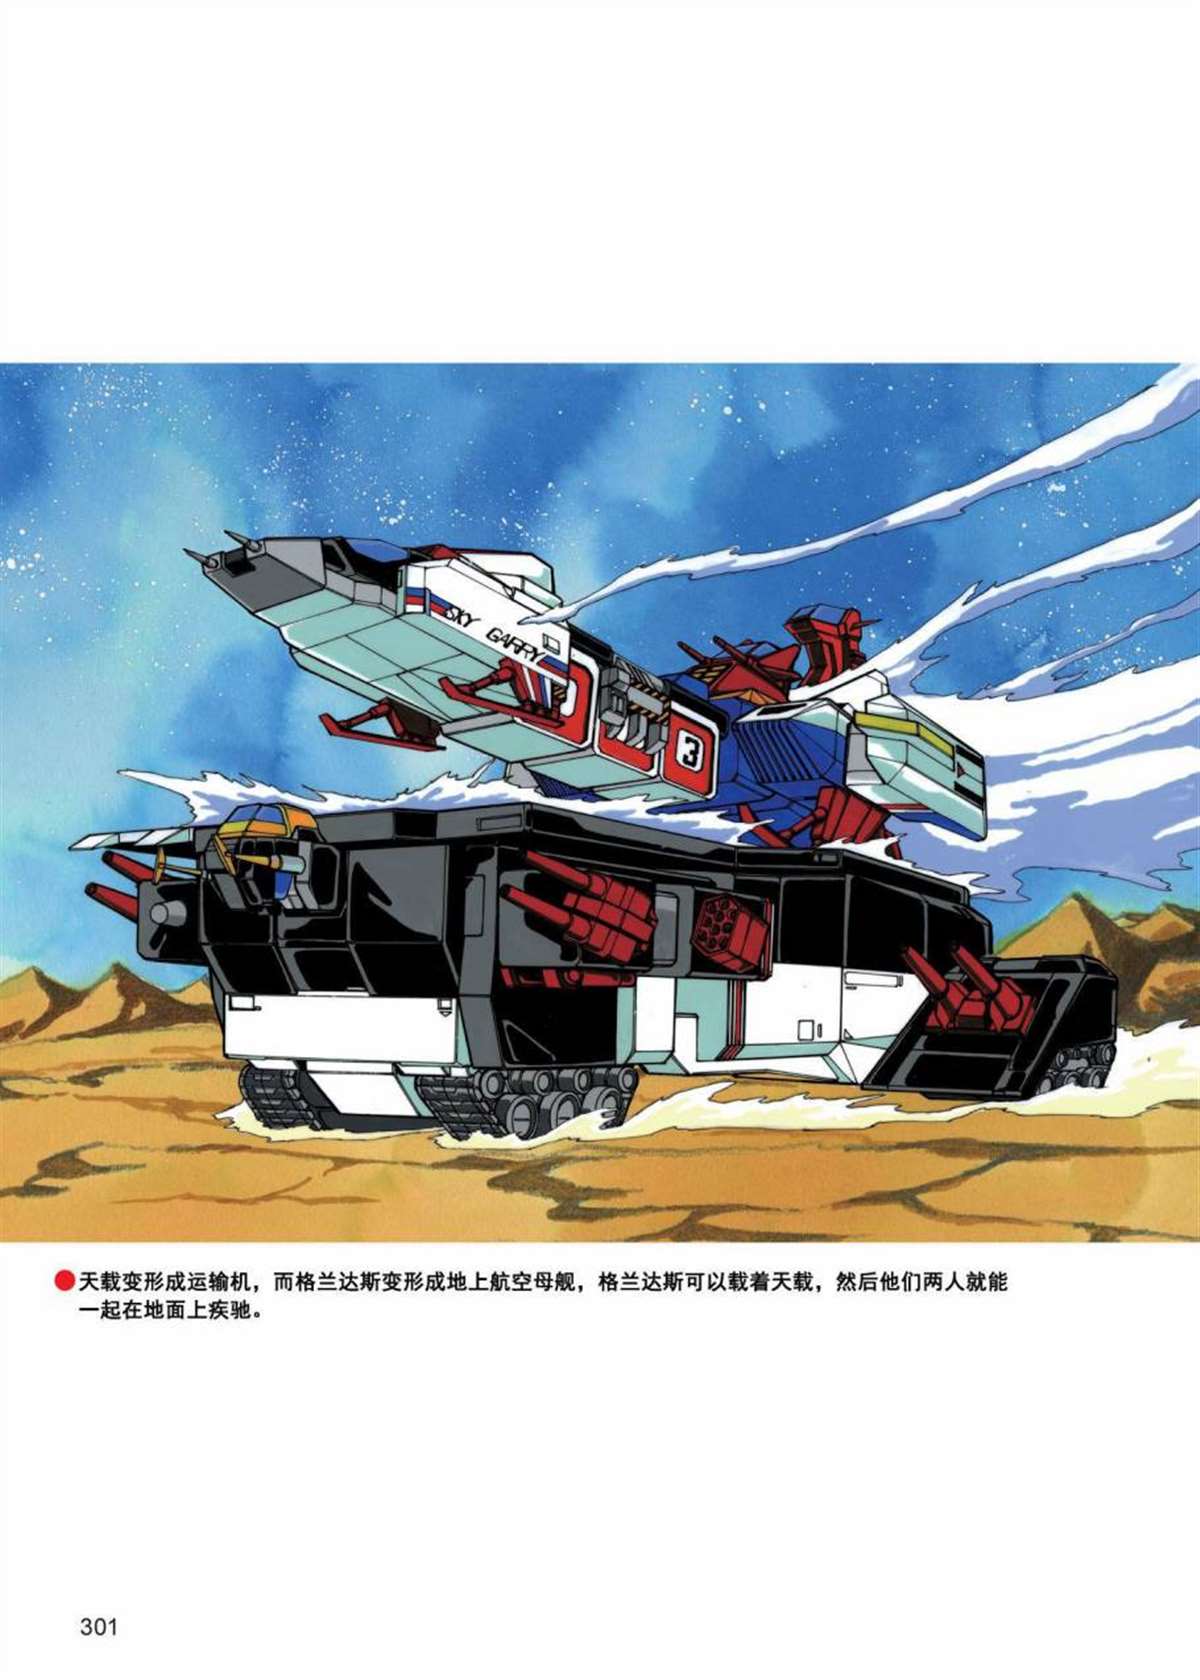 變形金剛日版G1雜誌插畫 - 《戰鬥吧！超機械生命體變形金剛：戰鬥之星》 - 1